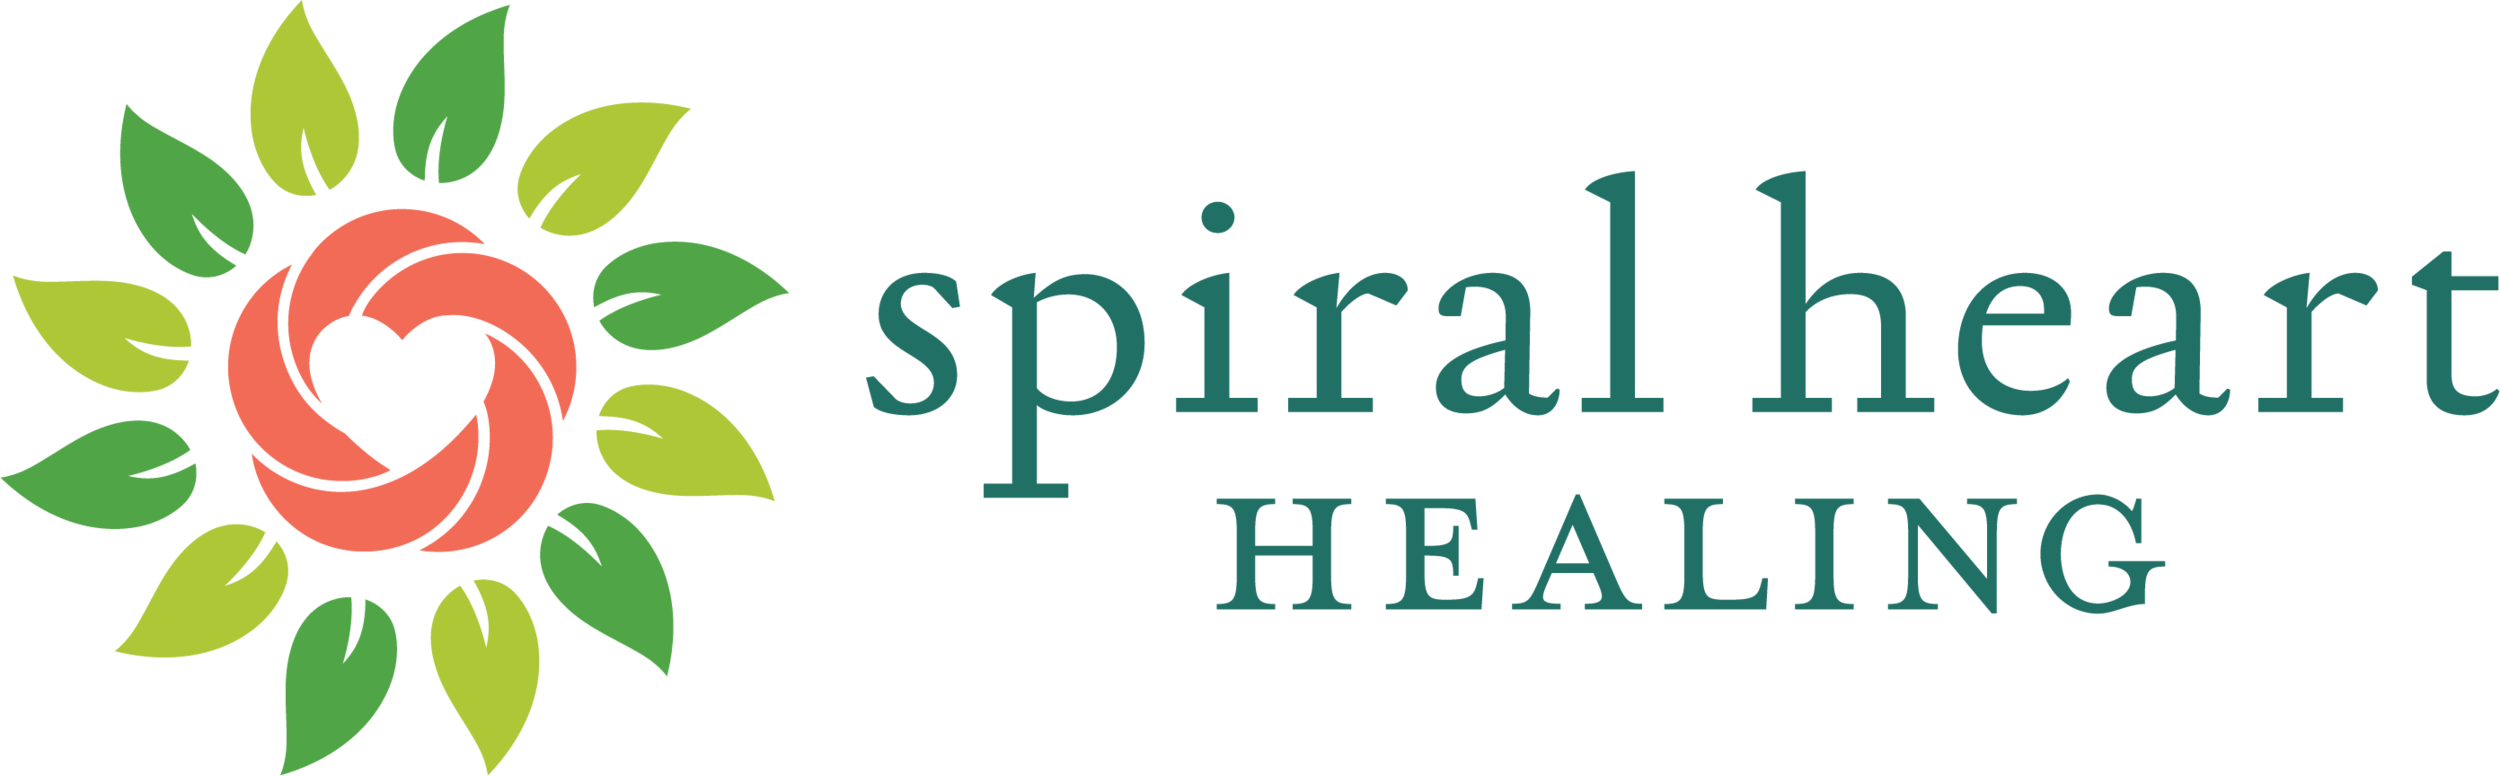 Spiral Heart Healing